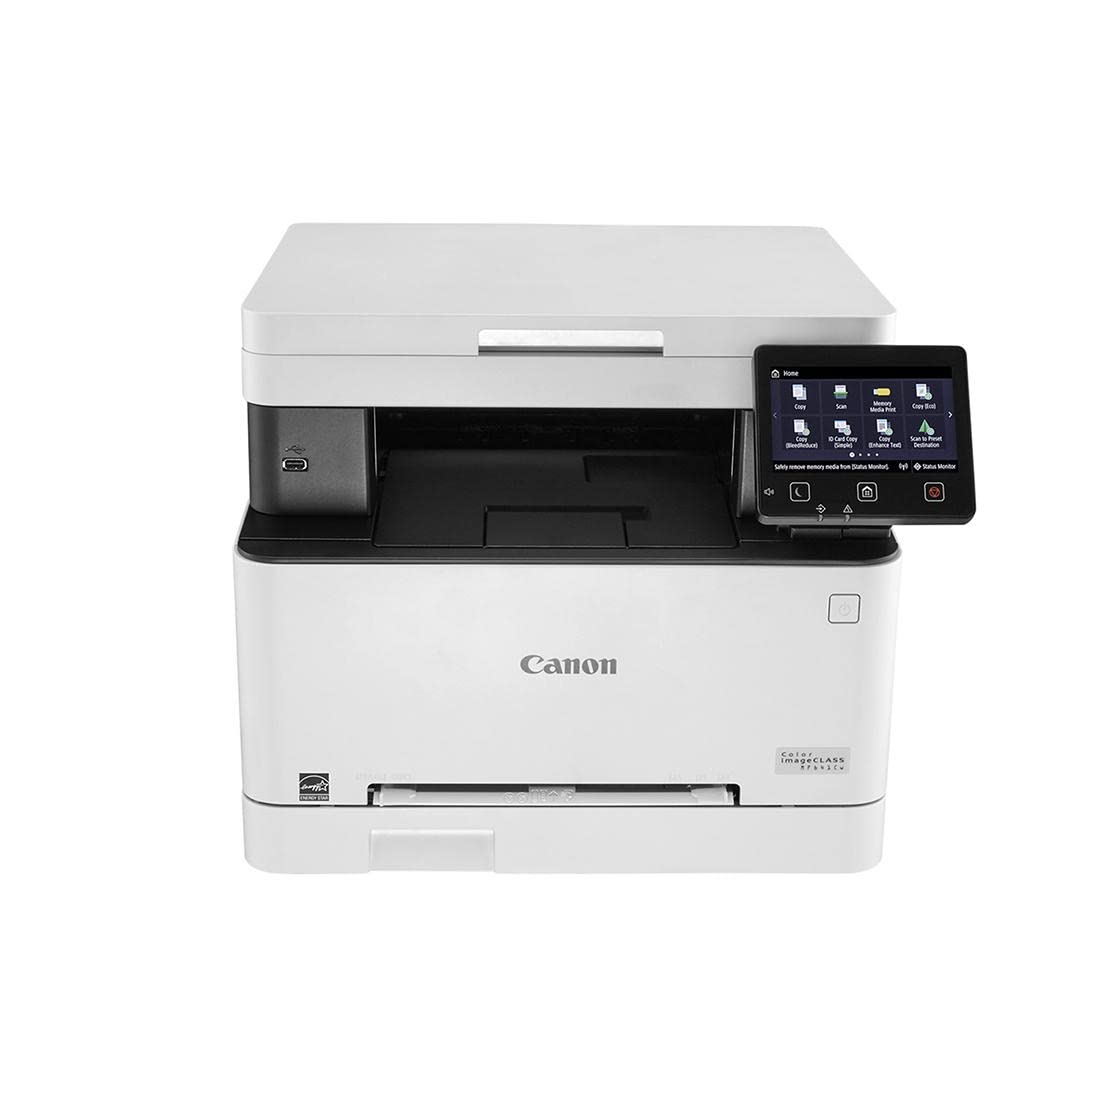 Canon カラー imageCLASS MF641Cw - 多機能、モバイル対応レーザー プリンター